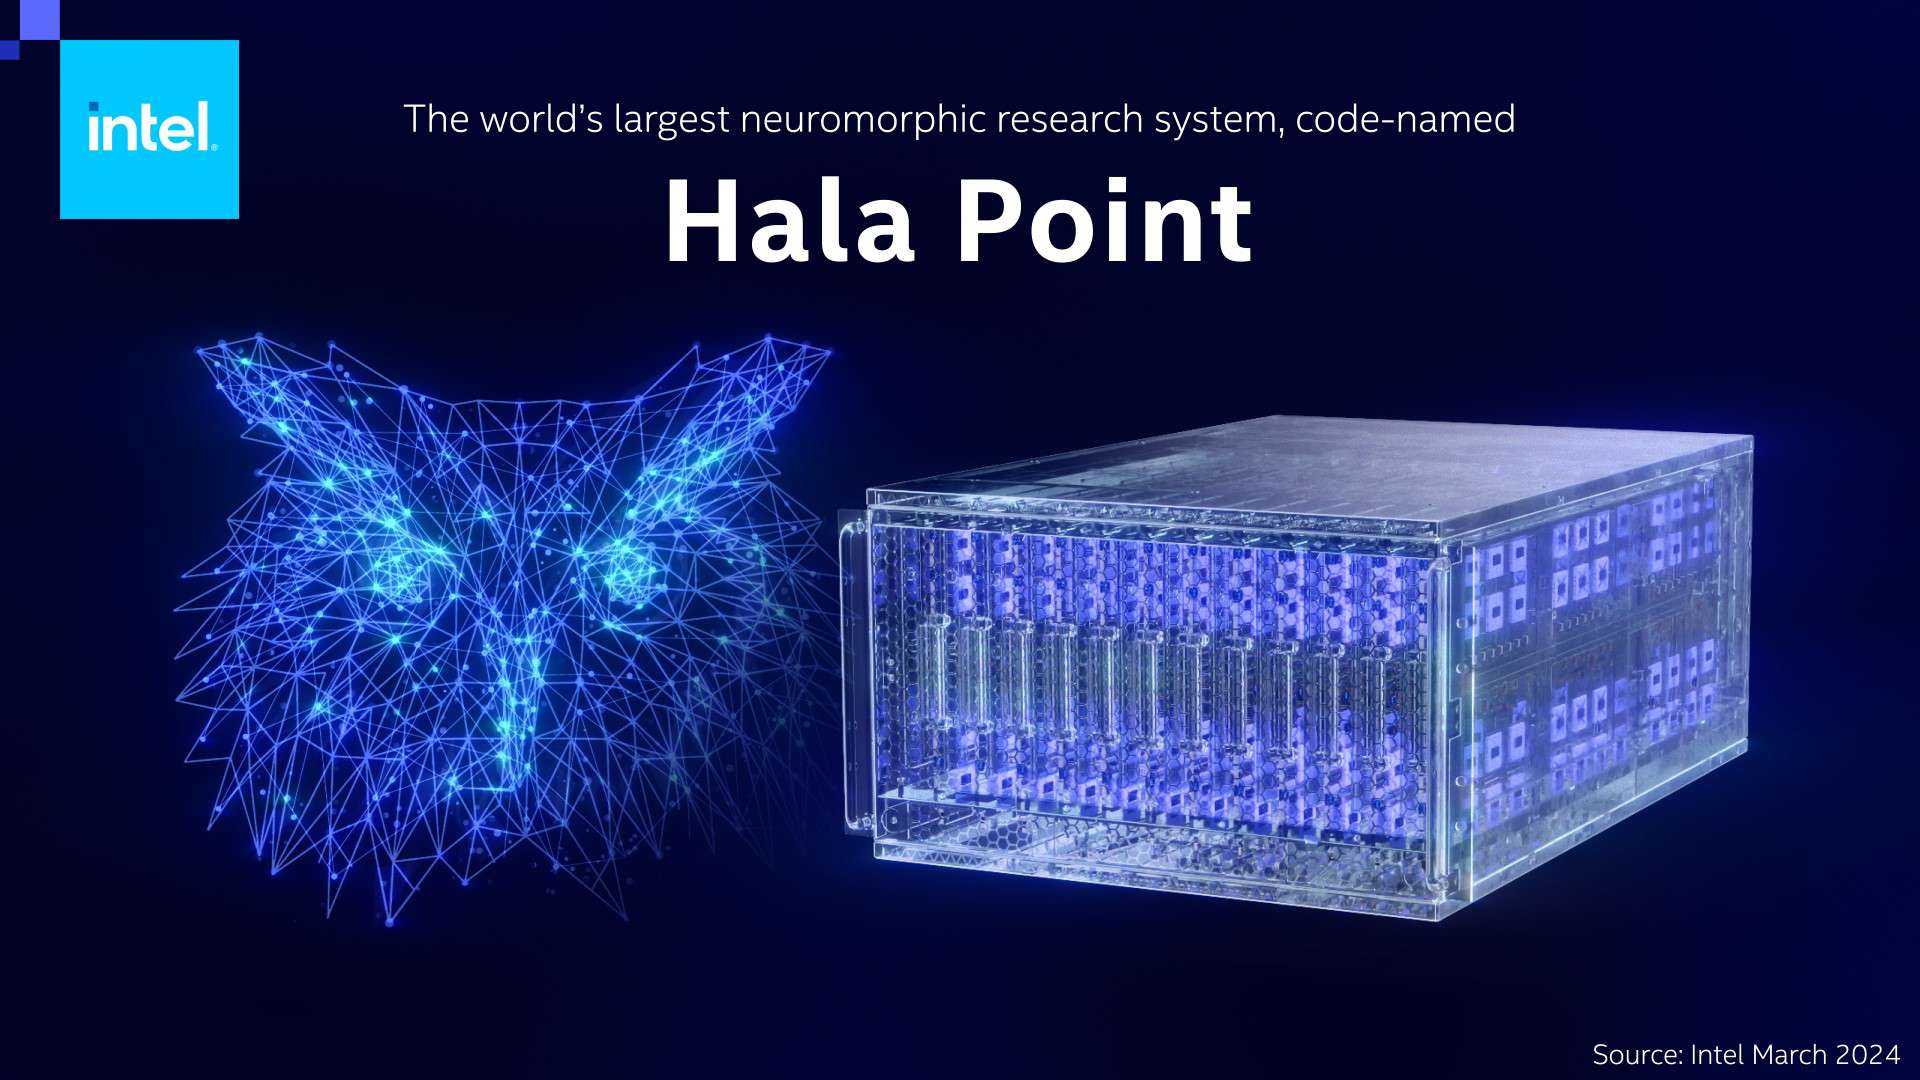 اینتل بزرگترین کامپیوتر نورومورفیک جهان را رونمایی کرد